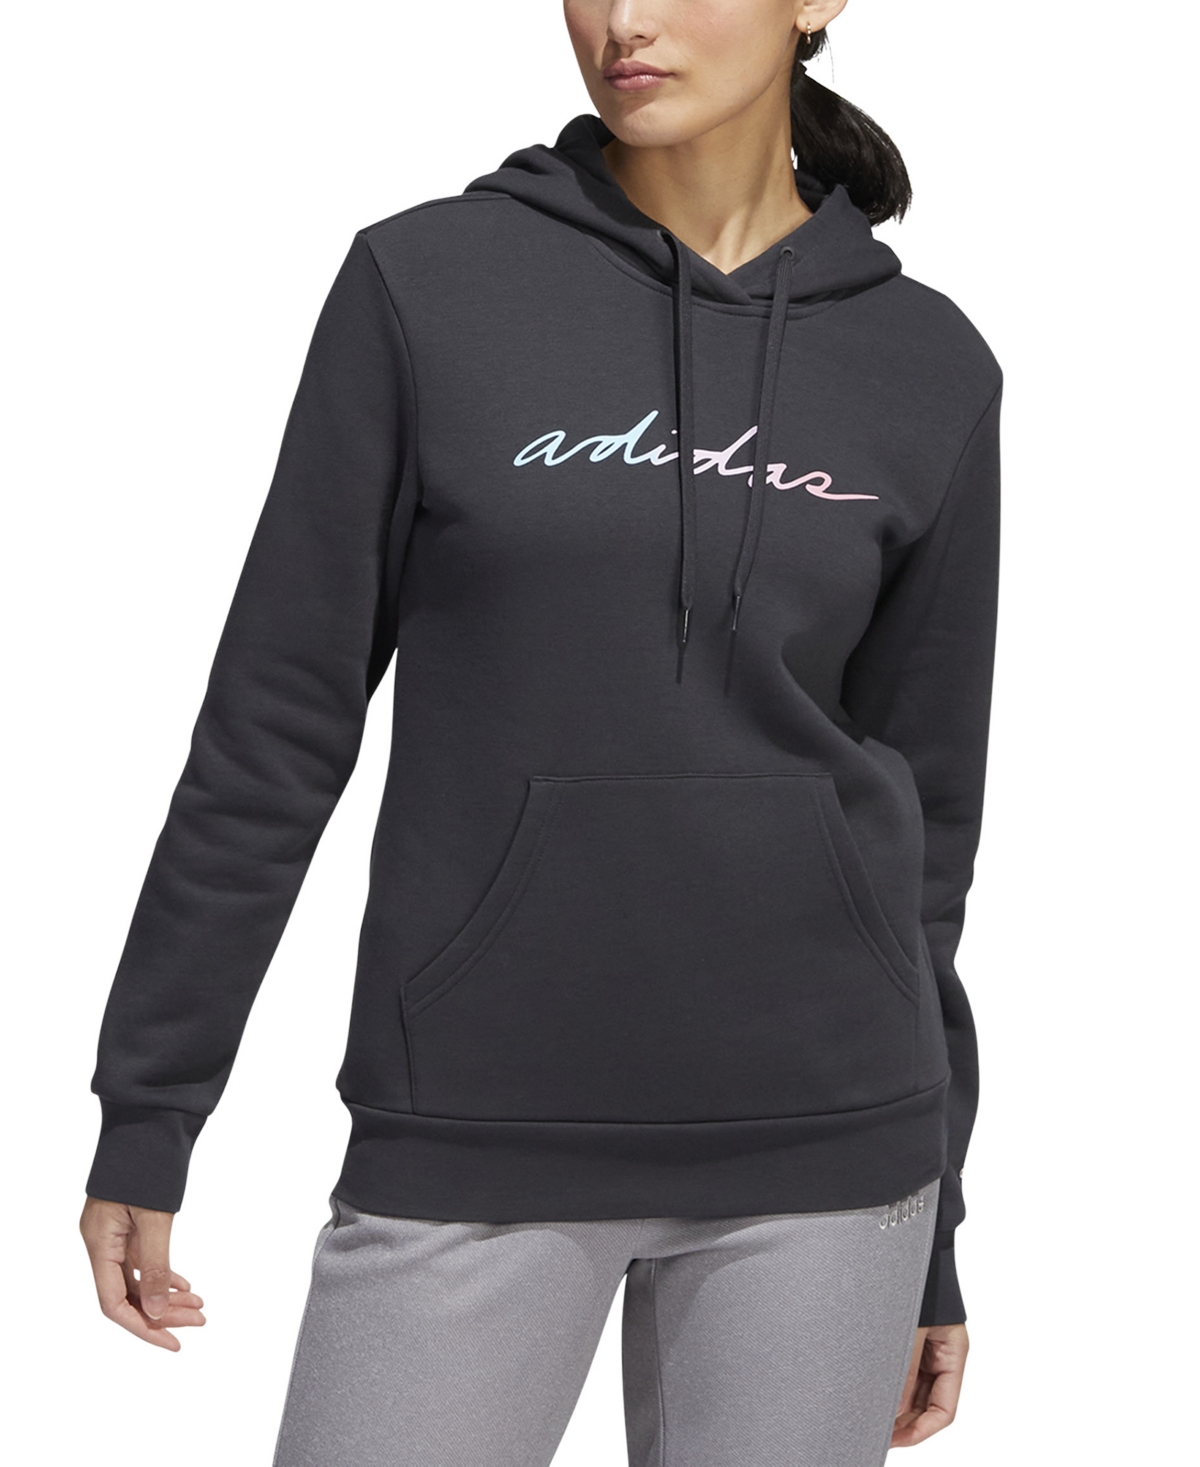  adidas Women's Linear-Script Sweatshirt Hoodie